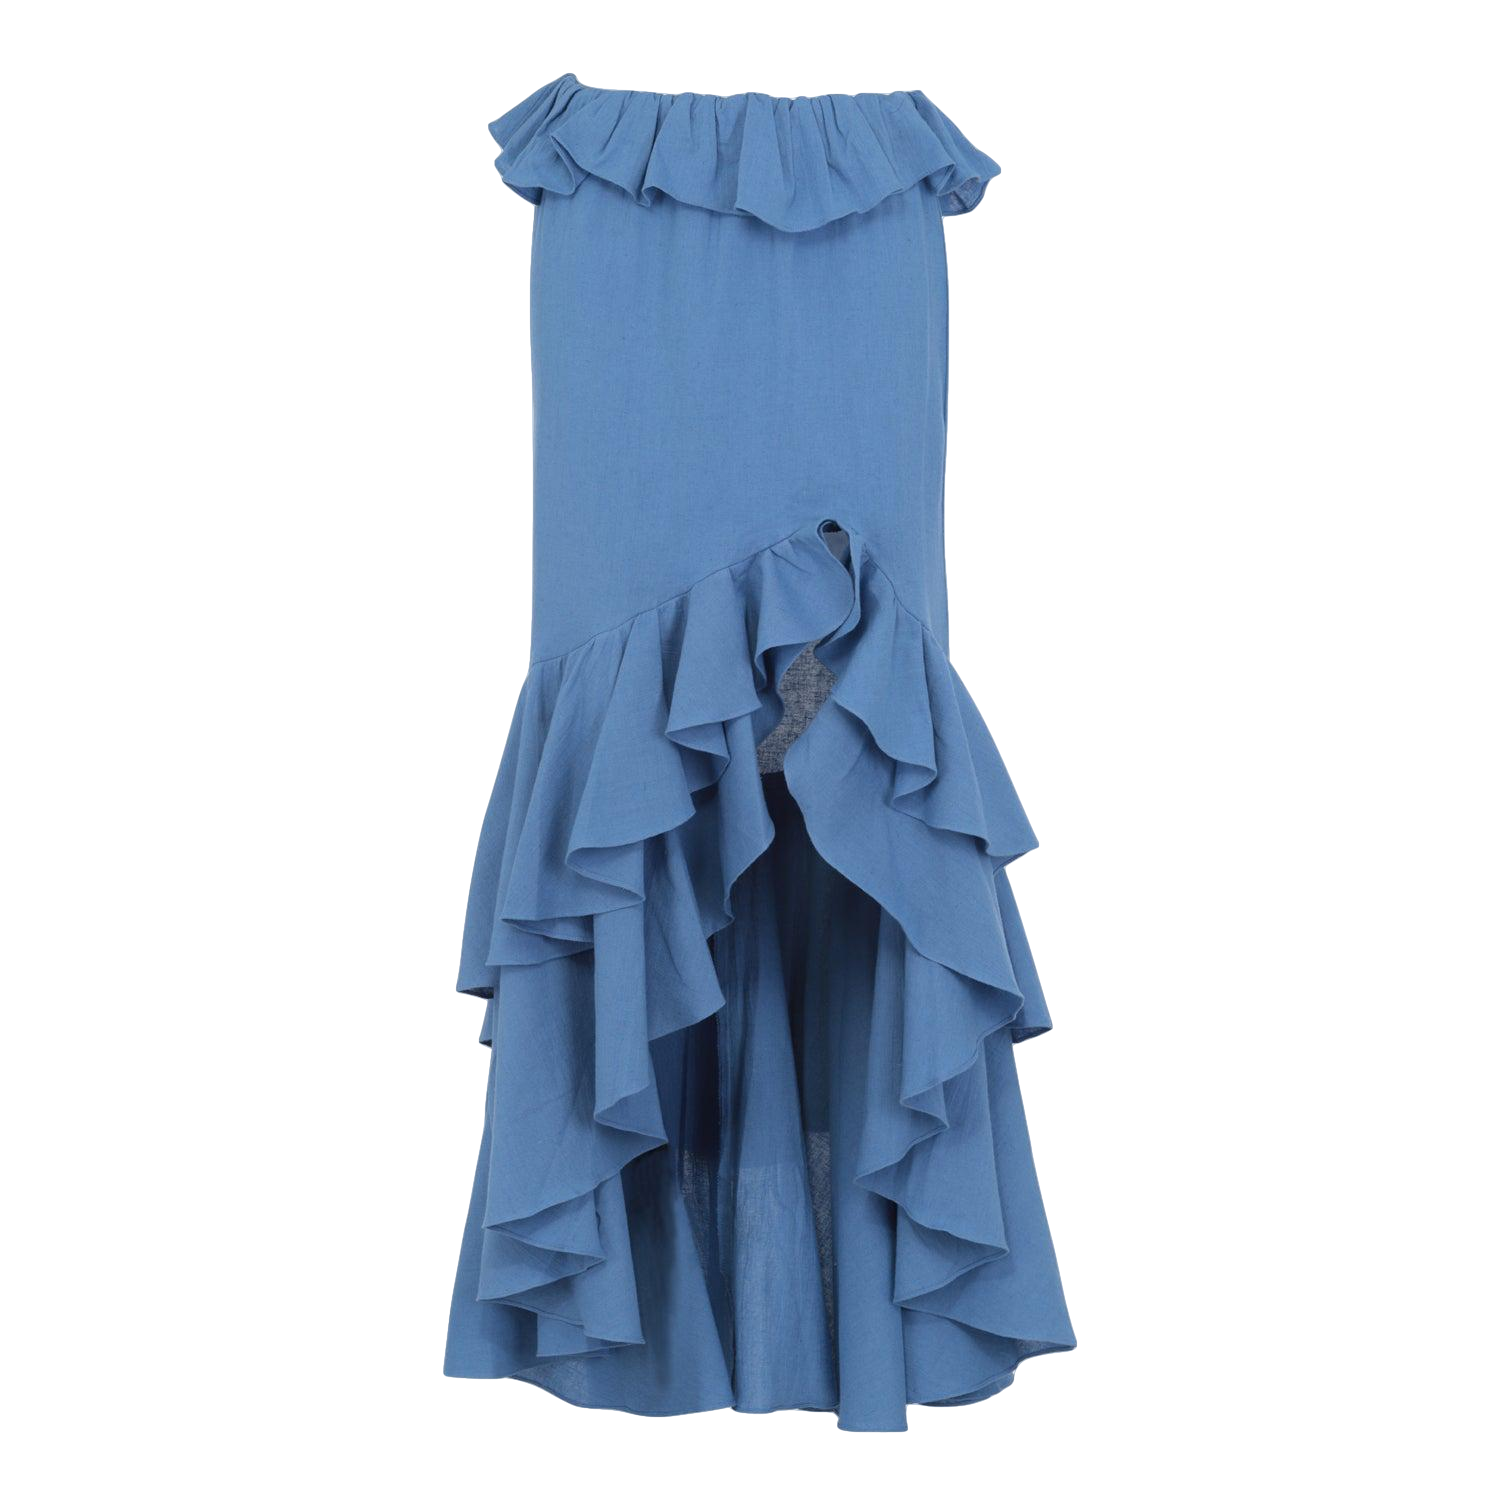 Raina ruffled skirt in blue von Amazula